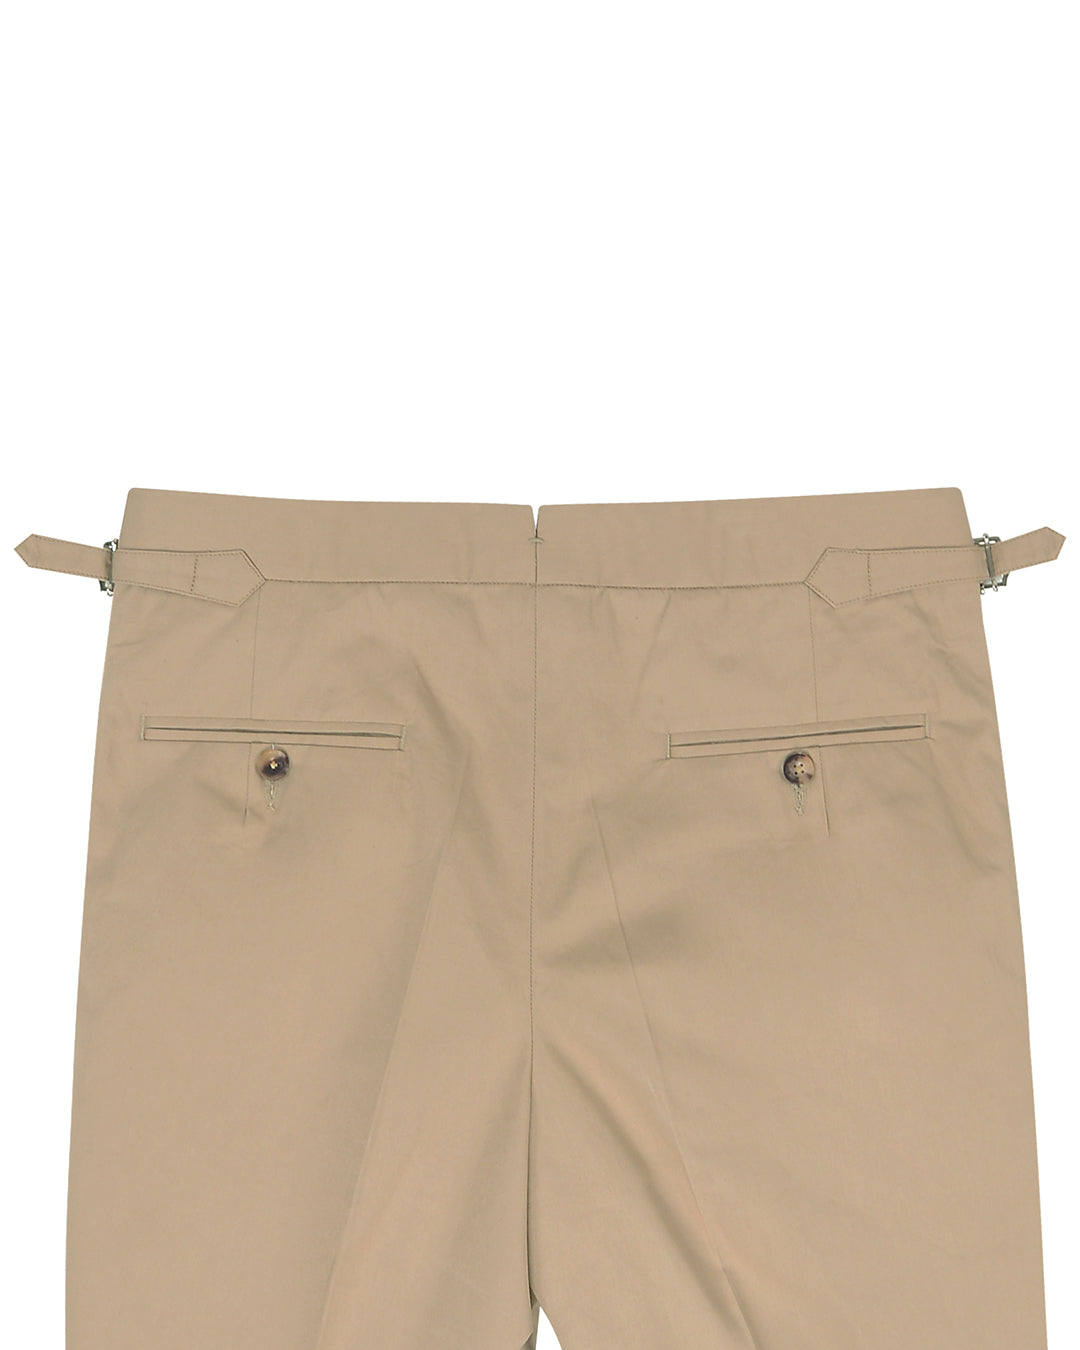 Big and Tall Essentials by DXL Men's Flat-Front Twill Pants, Khaki, 56W X  34L - Walmart.com